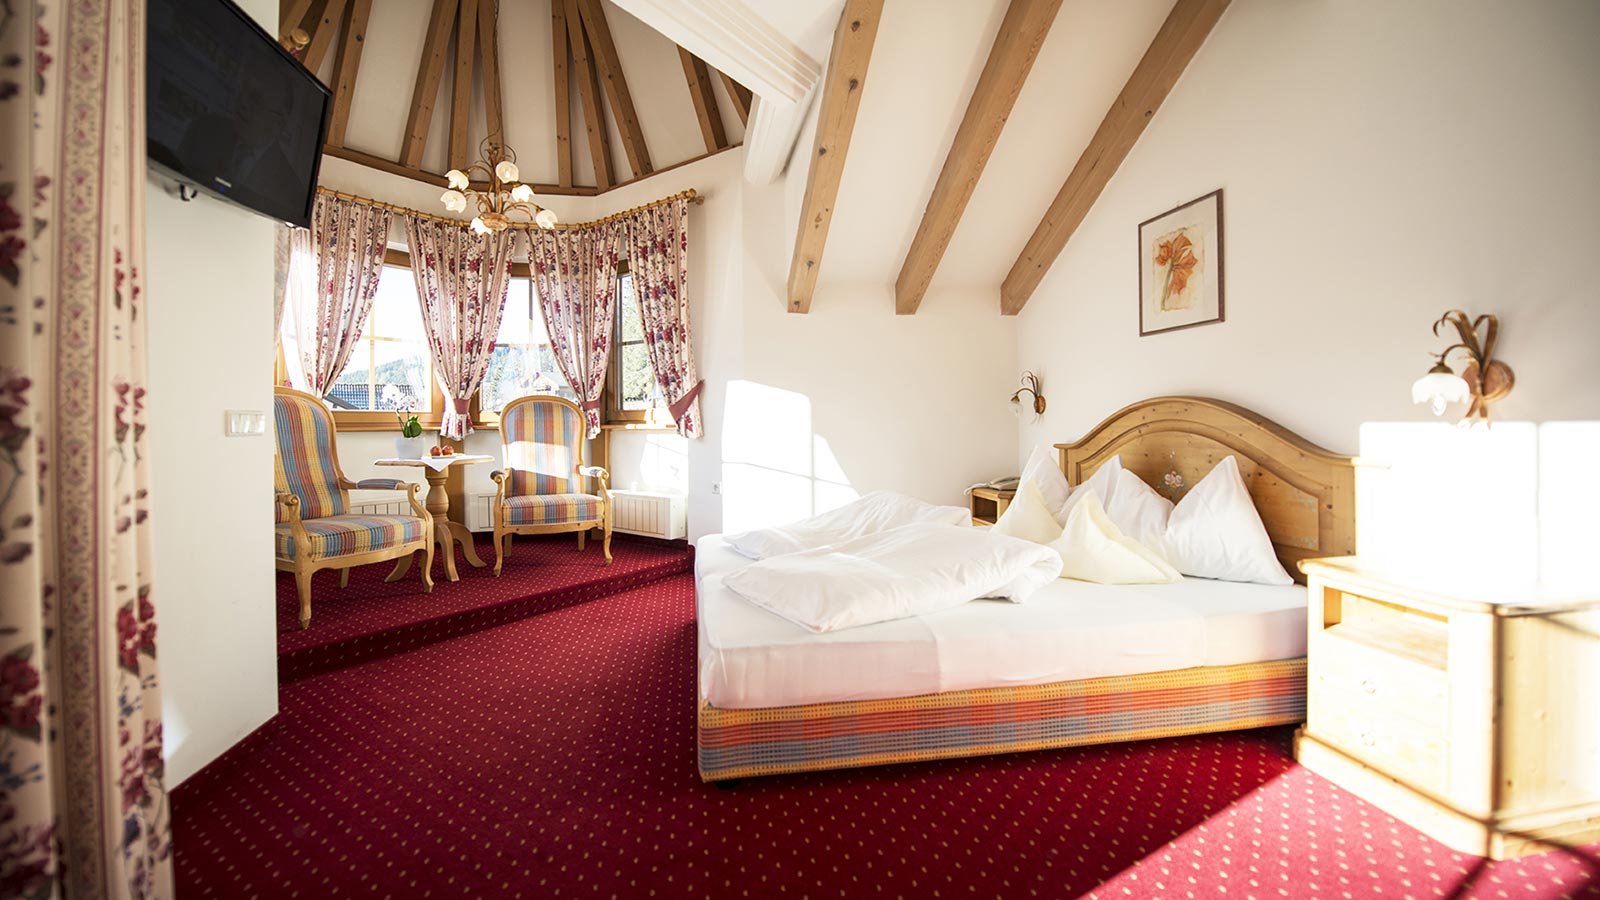 Raffinata e spaziosa camera dell'Hotel Gschwendt con moquette di colore rosso, letto matrimoniale e grandi finestre